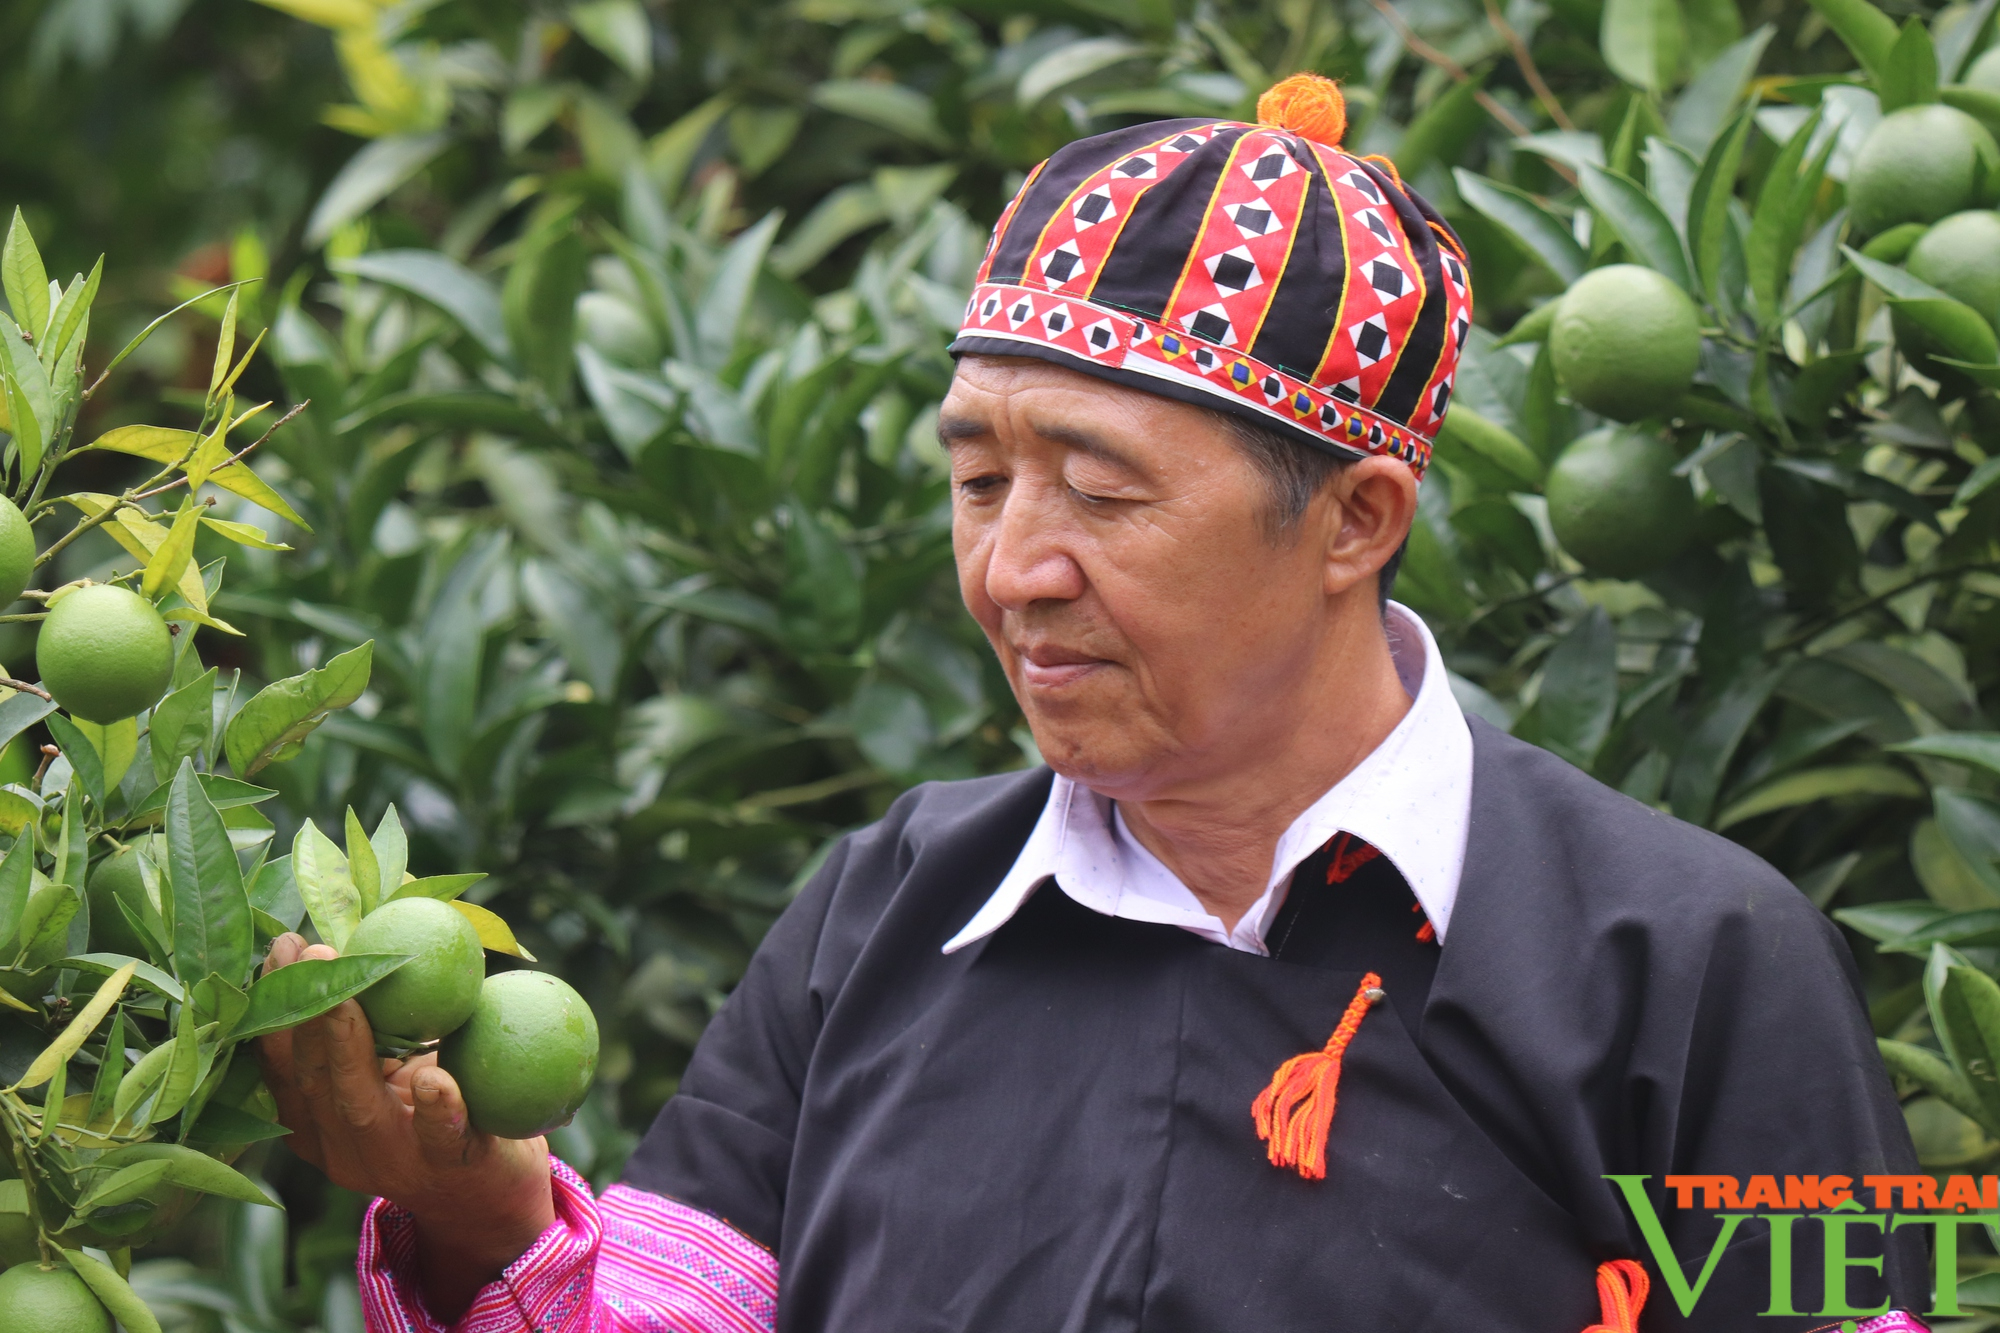 Chi Hội trưởng Chi Hội Nông dân ở Sơn La lãi hơn 1 tỷ/năm nhờ trồng cây ăn quả - Ảnh 2.